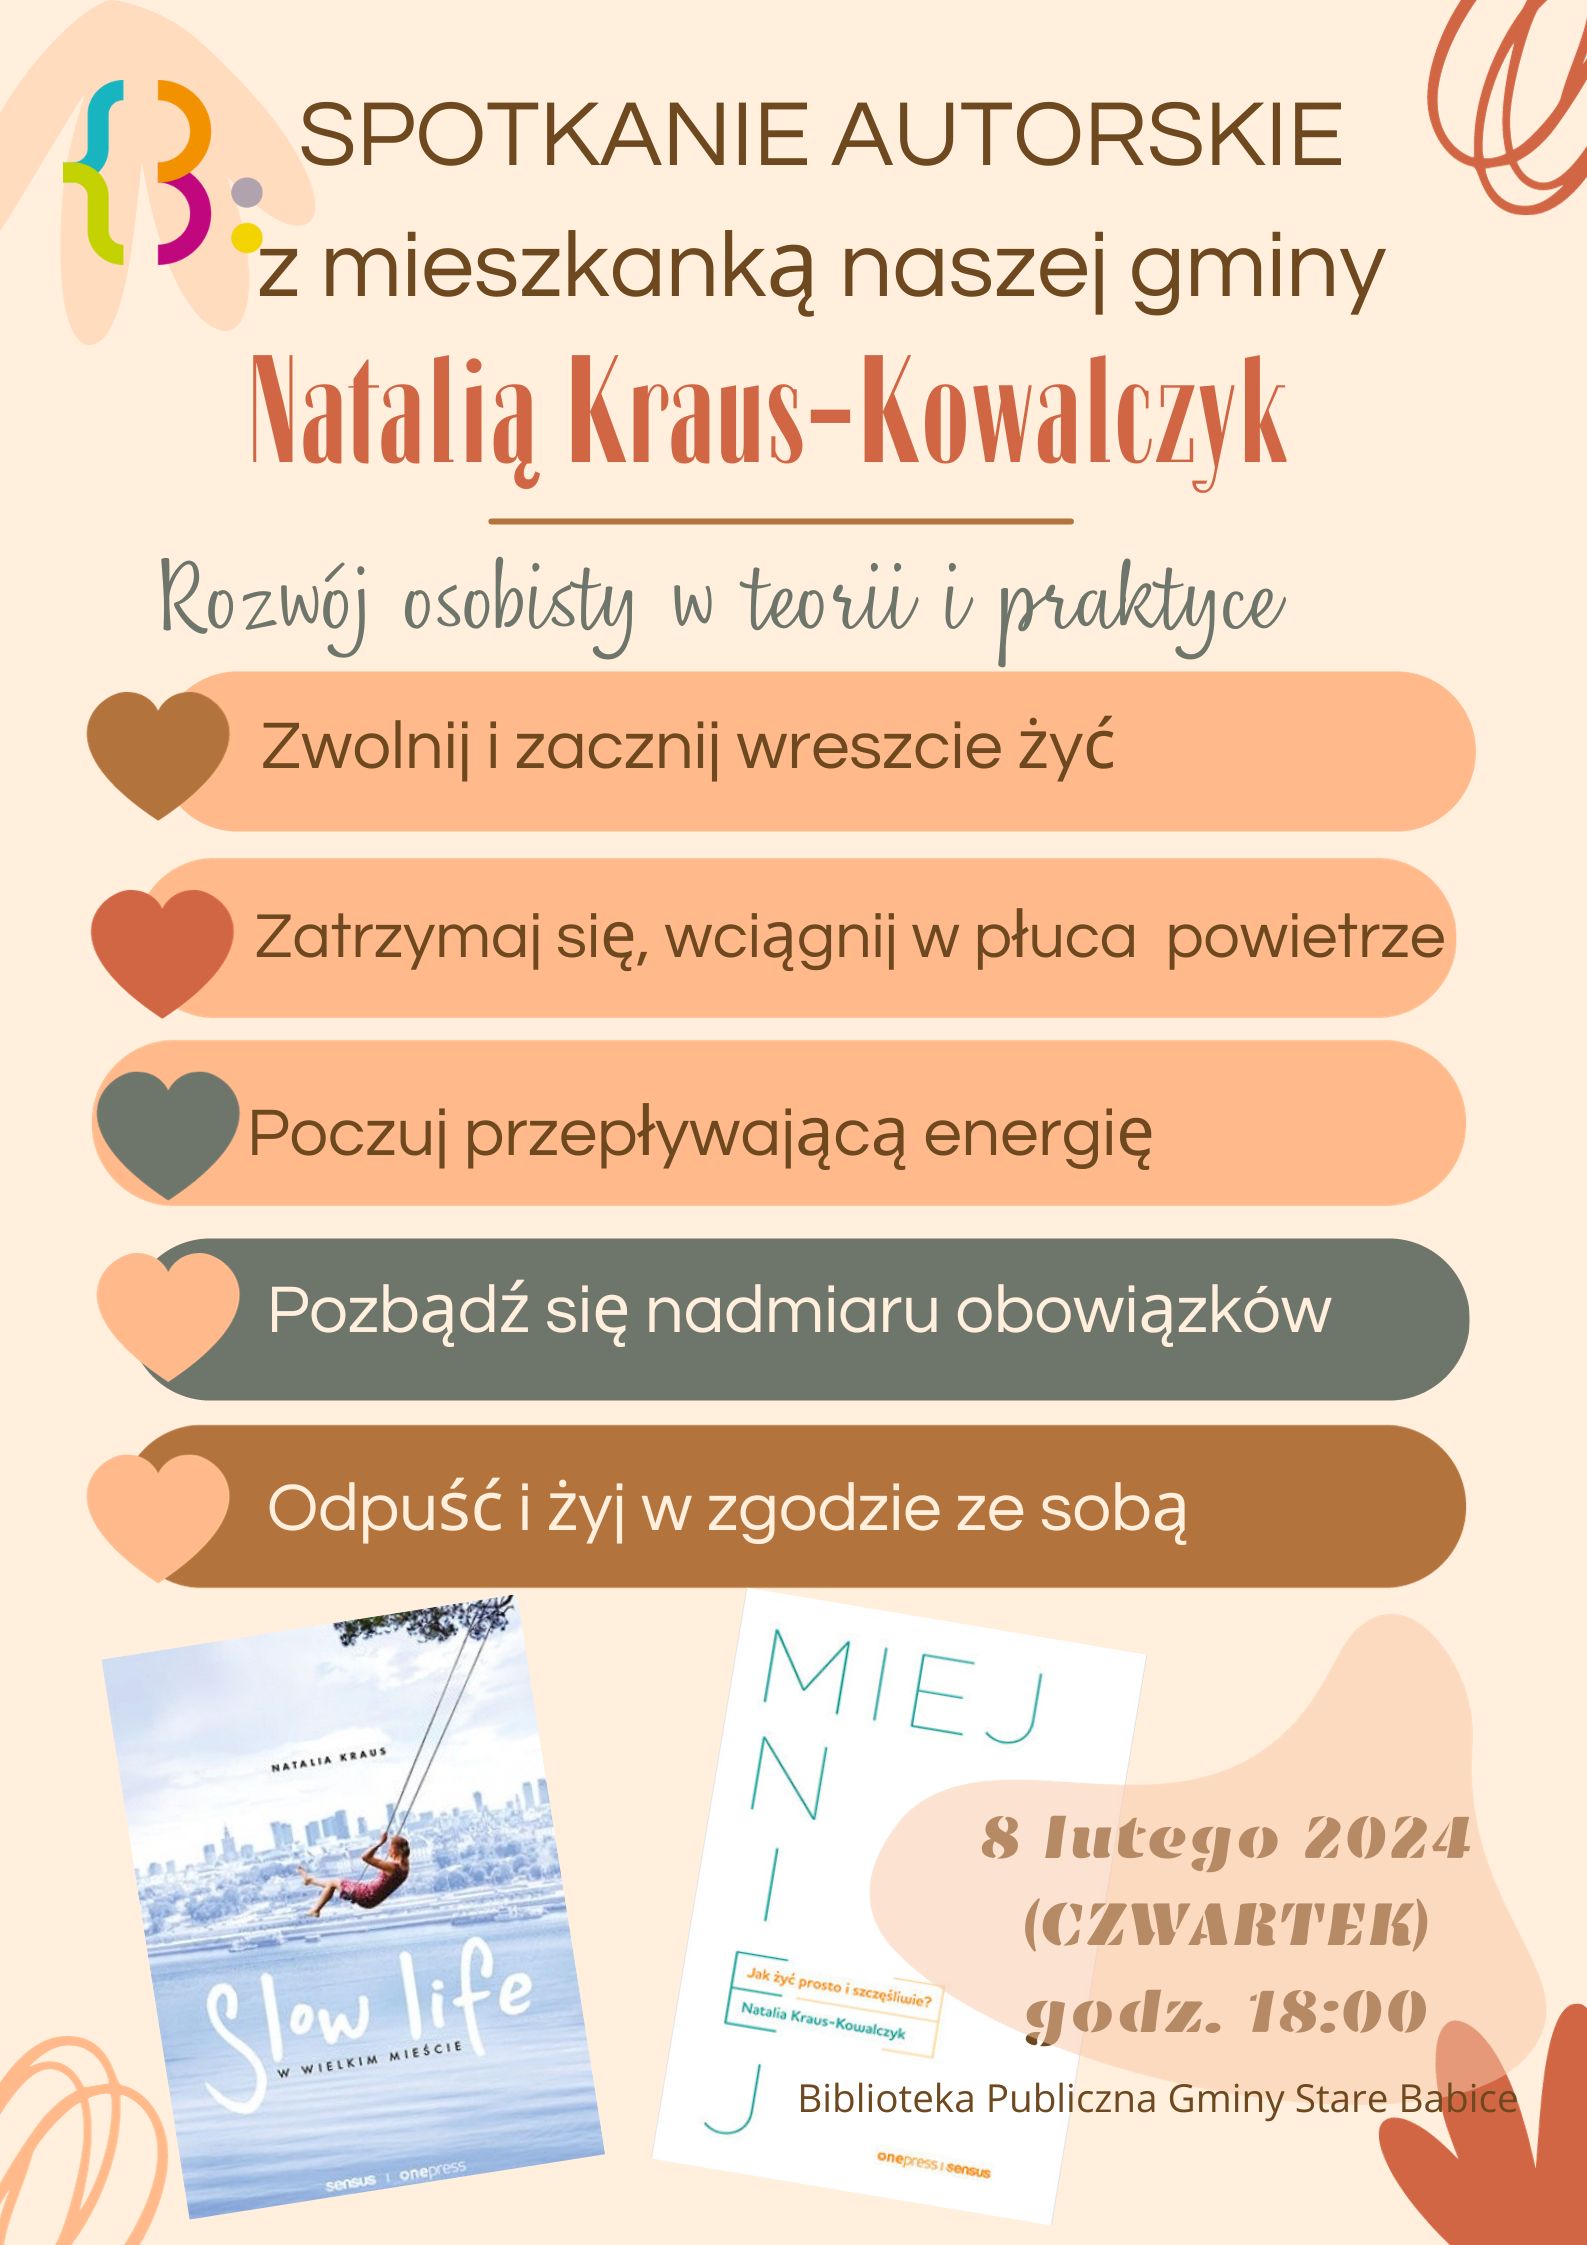 Spotkanie autorskie z Natalią Kraus-Kowalczyk